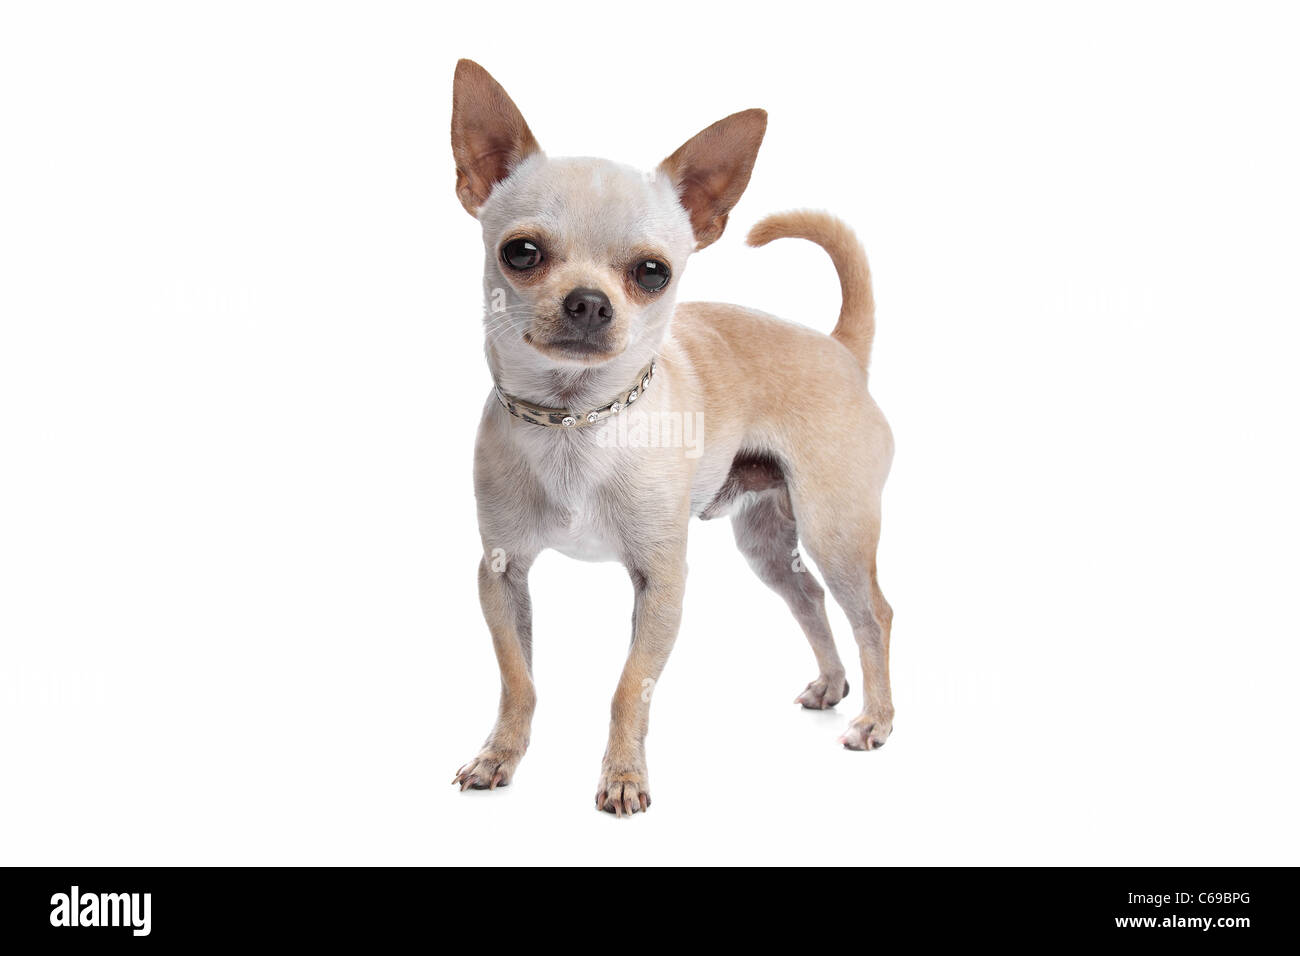 Chihuahua poil court devant un fond blanc Banque D'Images